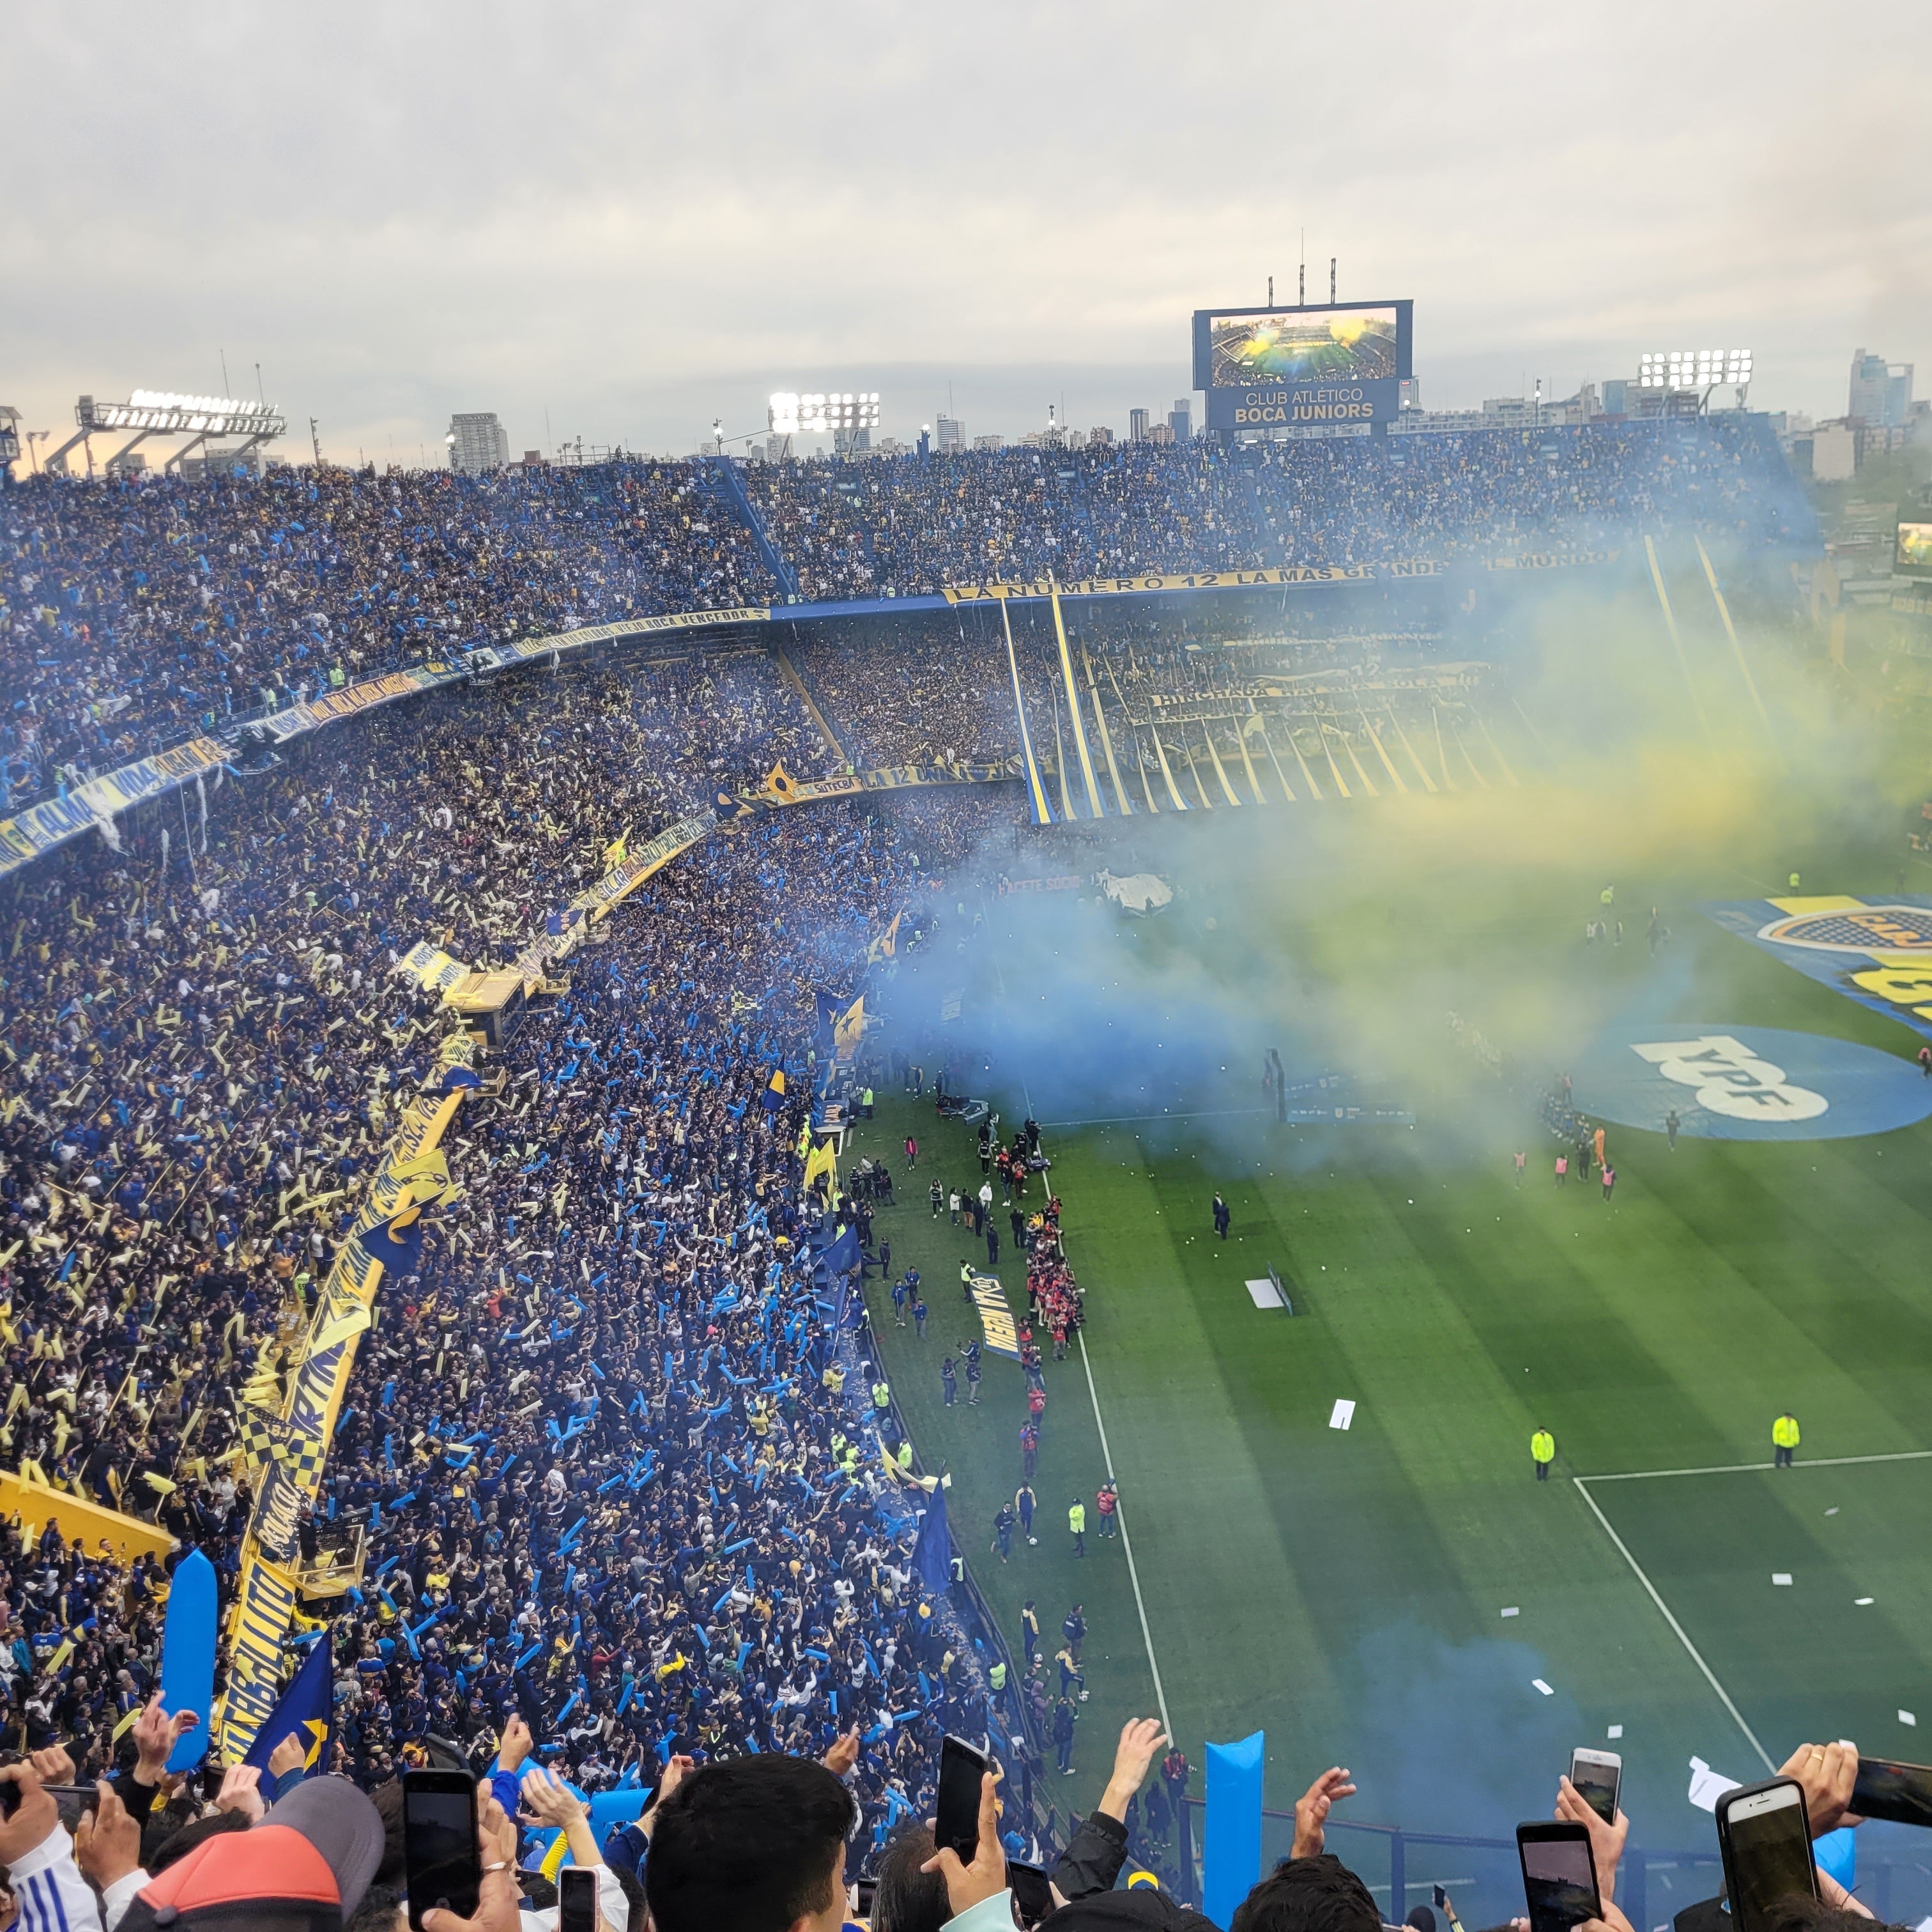 Boca Juniors at La Bombonera - Pibe de Barrio